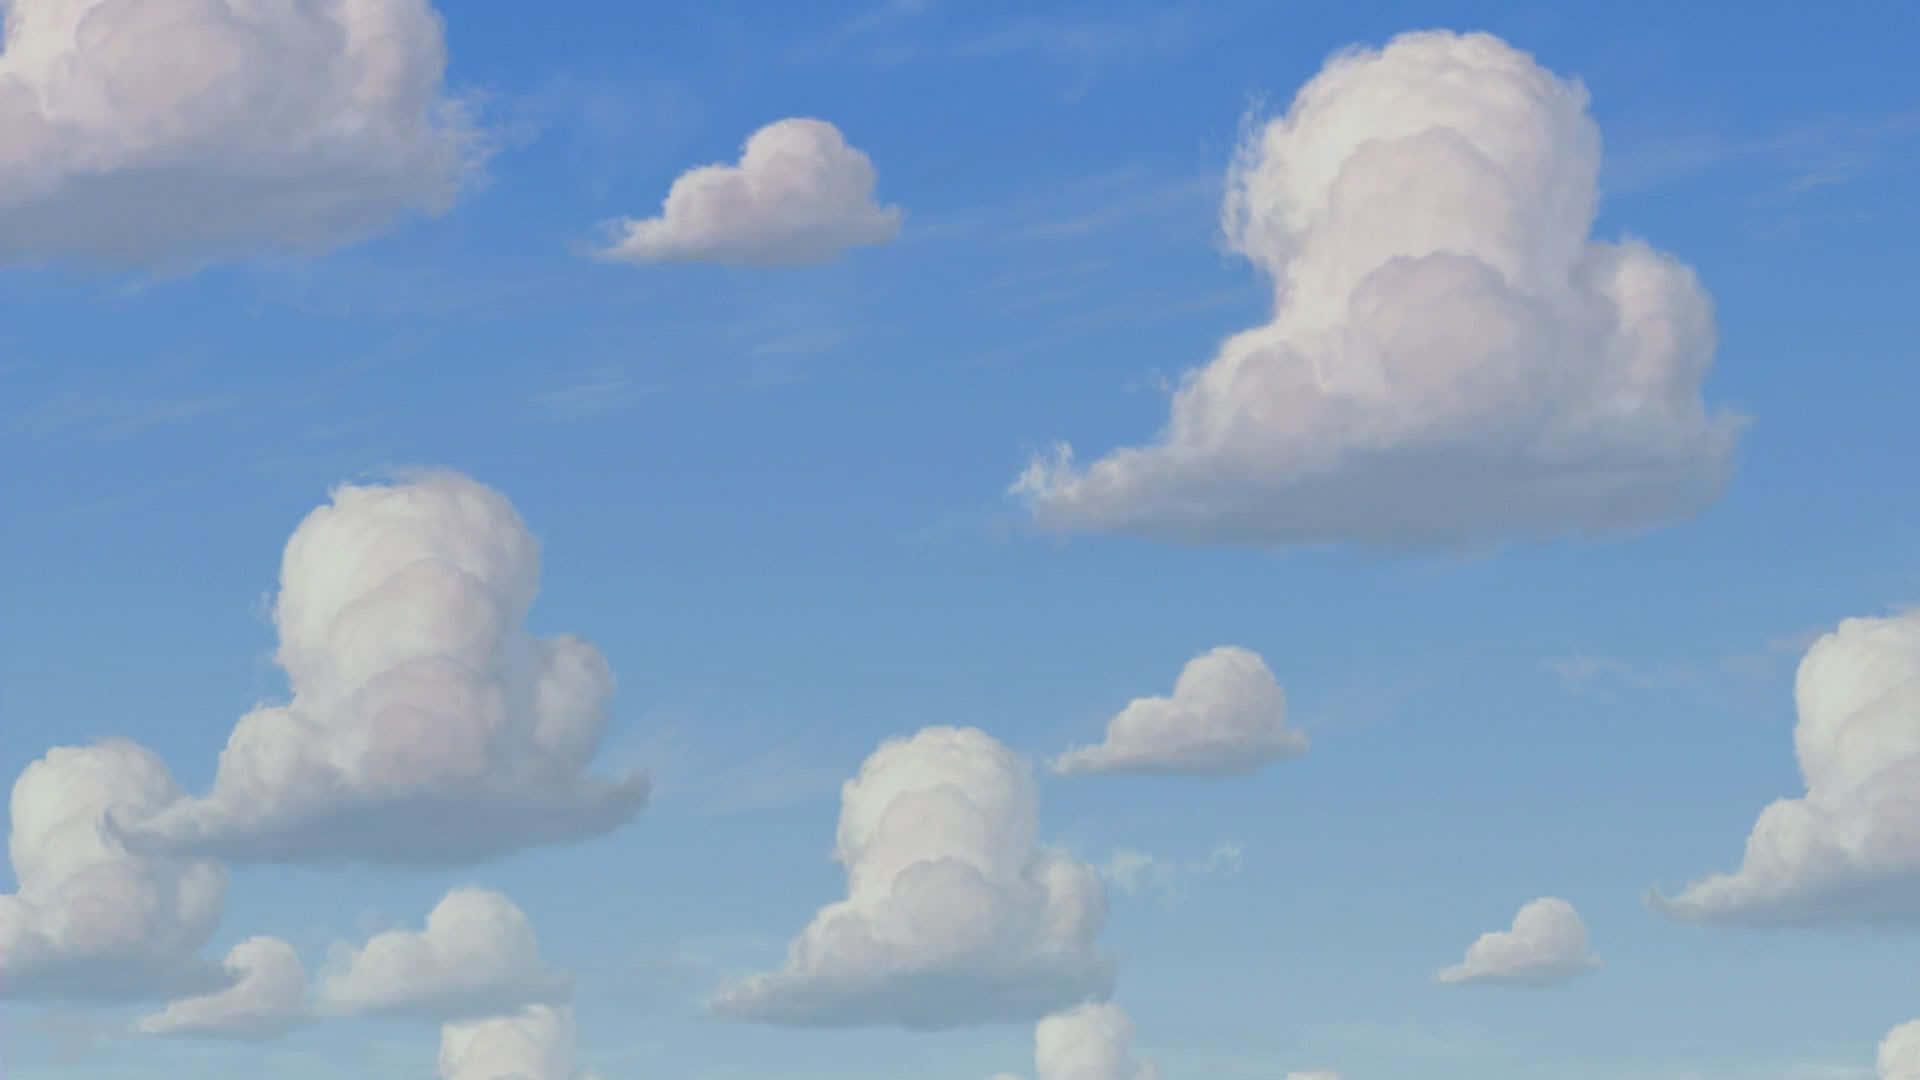 Kig op på himlen og se en drøm blive til virkelighed - en Toy Story Cloud! Wallpaper